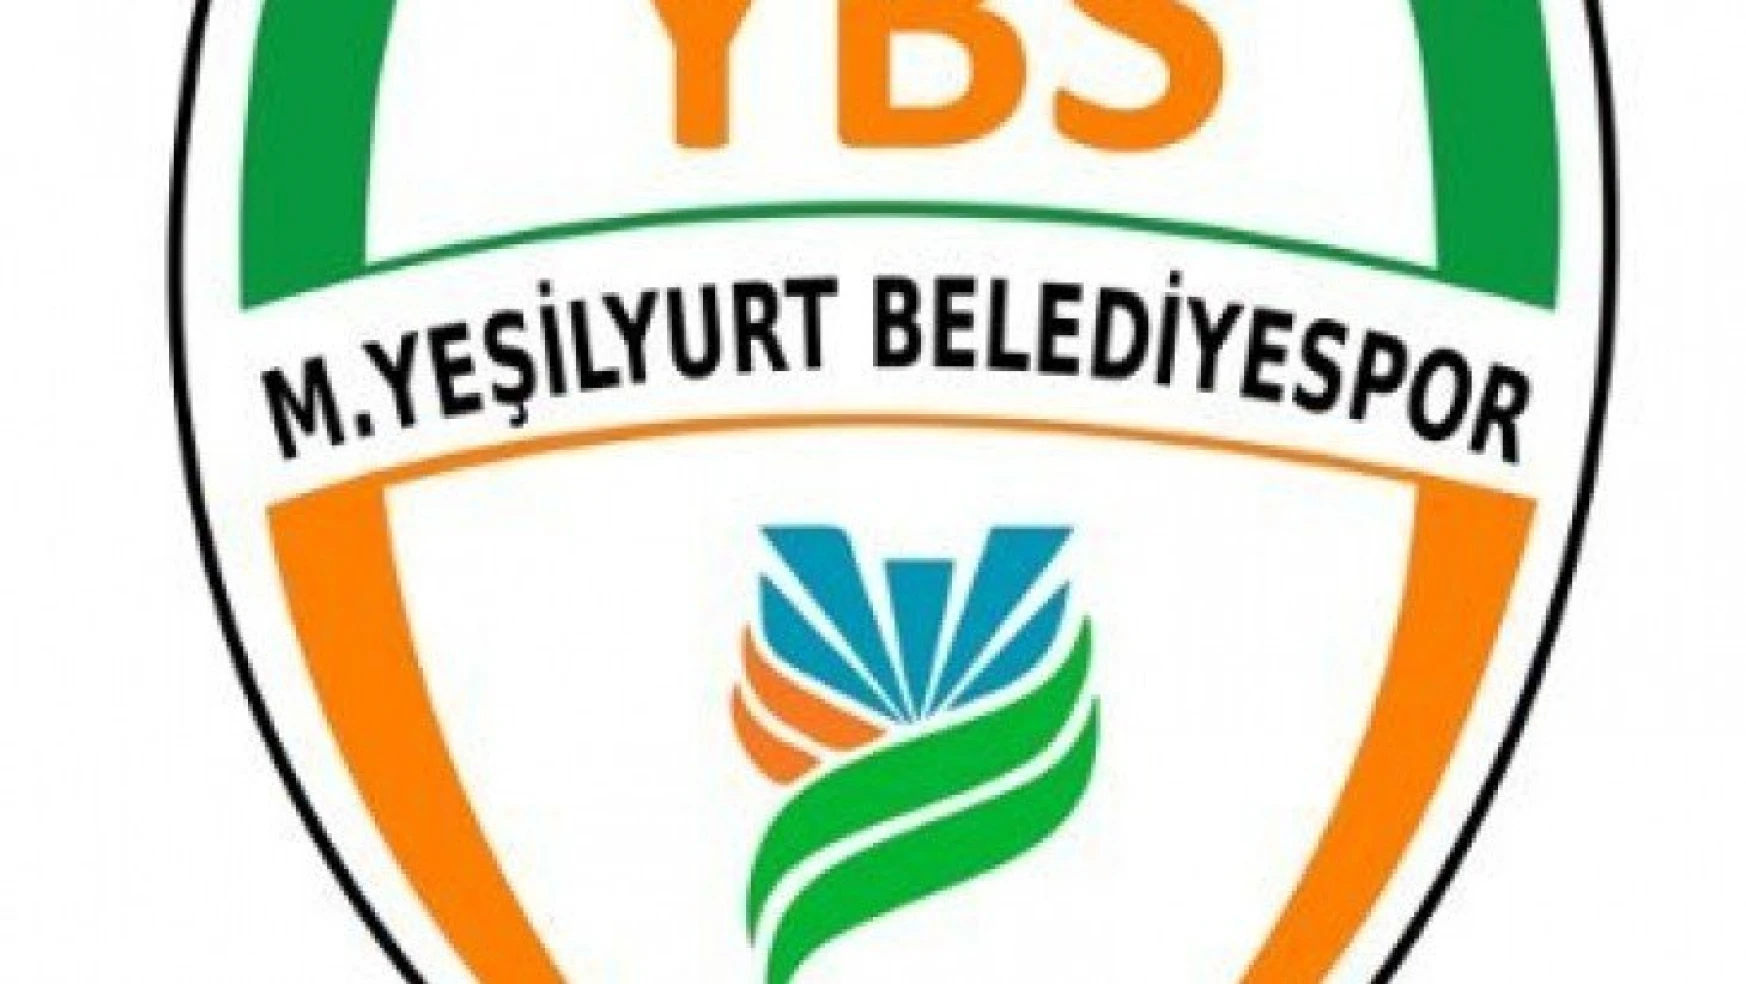 Yeşilyurt Belediyespor -Nevşehir Belediyespor 0-0